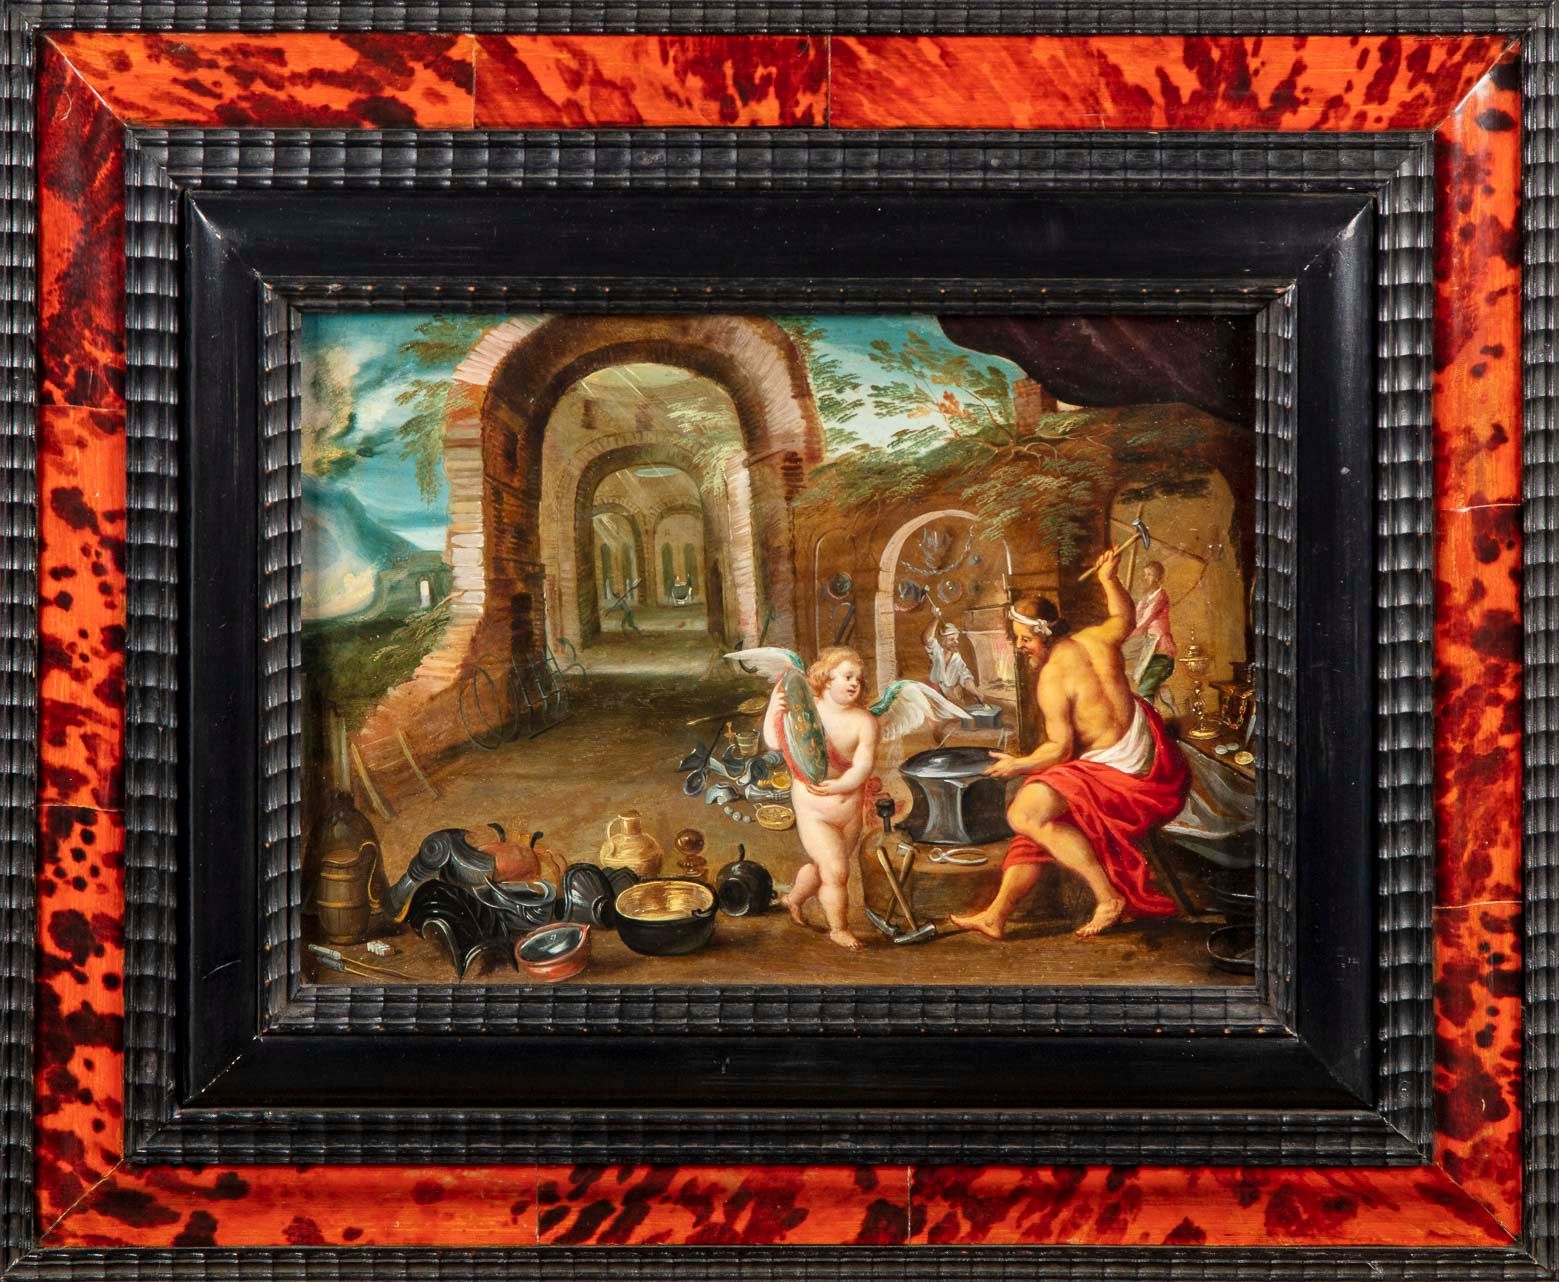 Ecole anversoise XVIIe Siglo XVII ESCUELA DE ANVERSOISE

Alegoría del fuego

Ale&hellip;